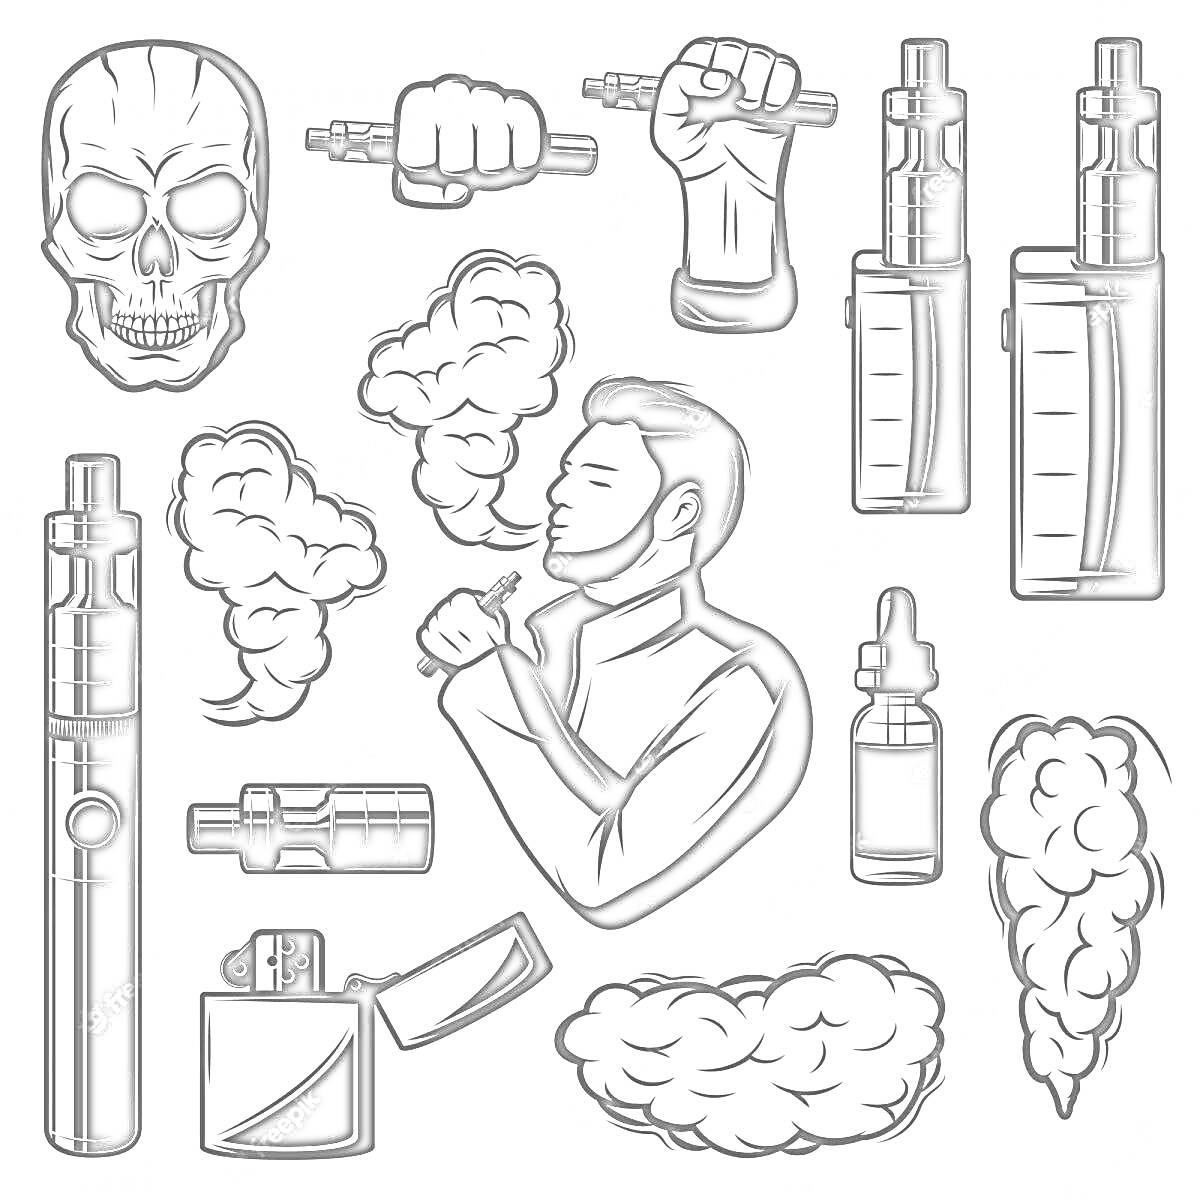 Черно-белая раскраска с вейпом, включающая череп, дым, ликерный флакон, зиппо зажигалку, образы рук с вейпами и человека, курящего вейп